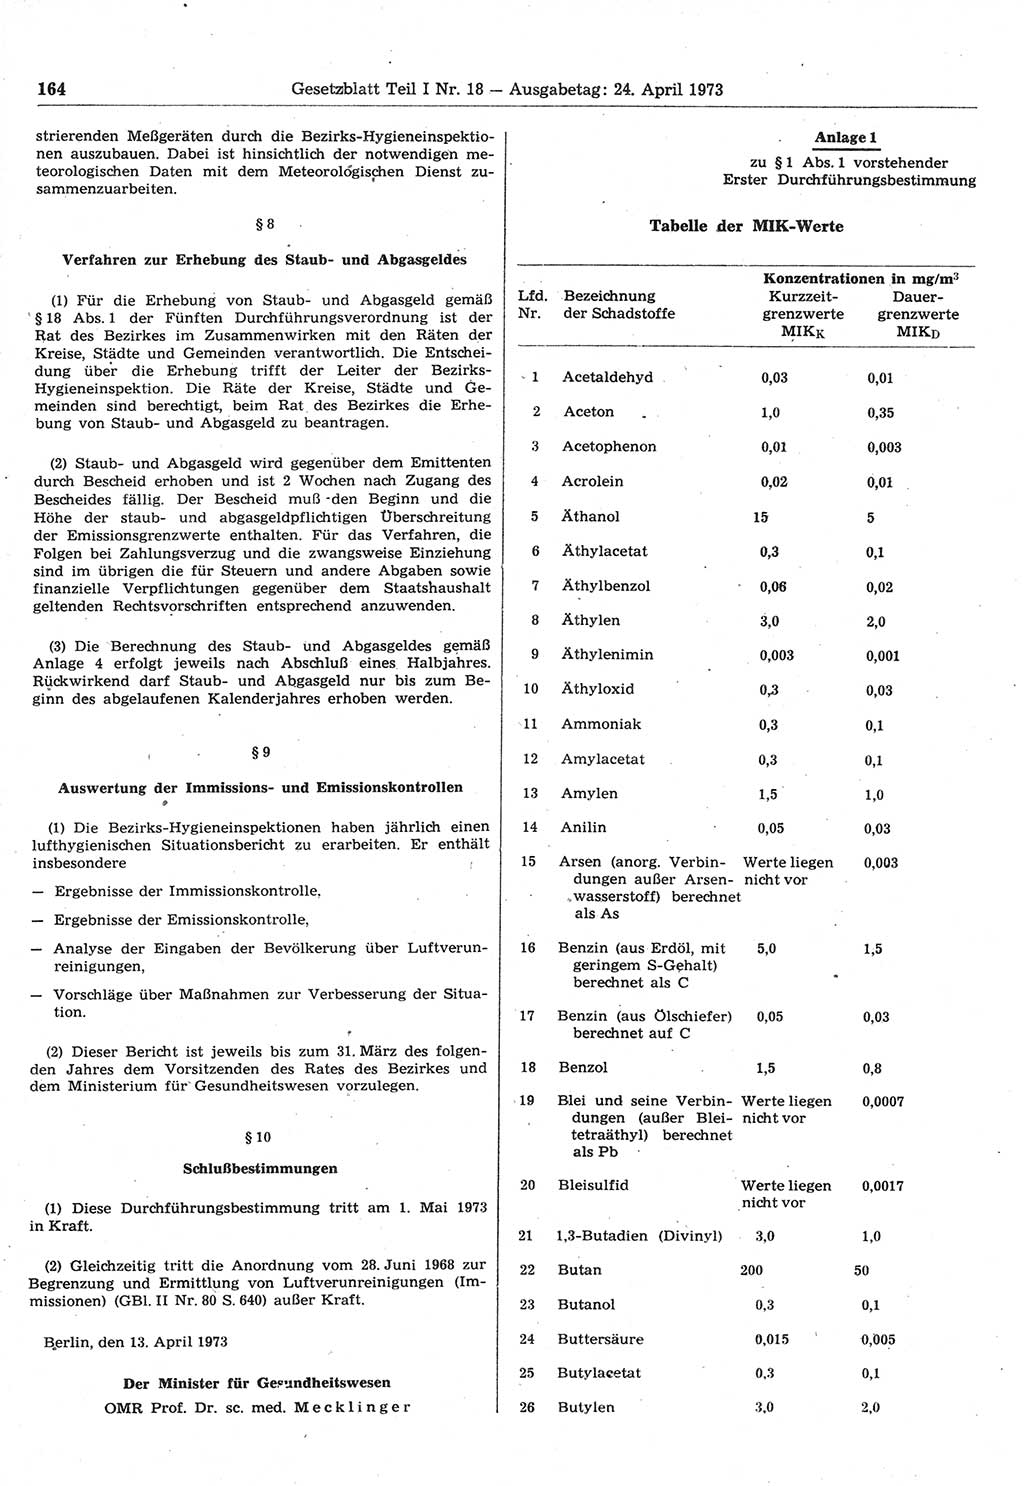 Gesetzblatt (GBl.) der Deutschen Demokratischen Republik (DDR) Teil Ⅰ 1973, Seite 164 (GBl. DDR Ⅰ 1973, S. 164)